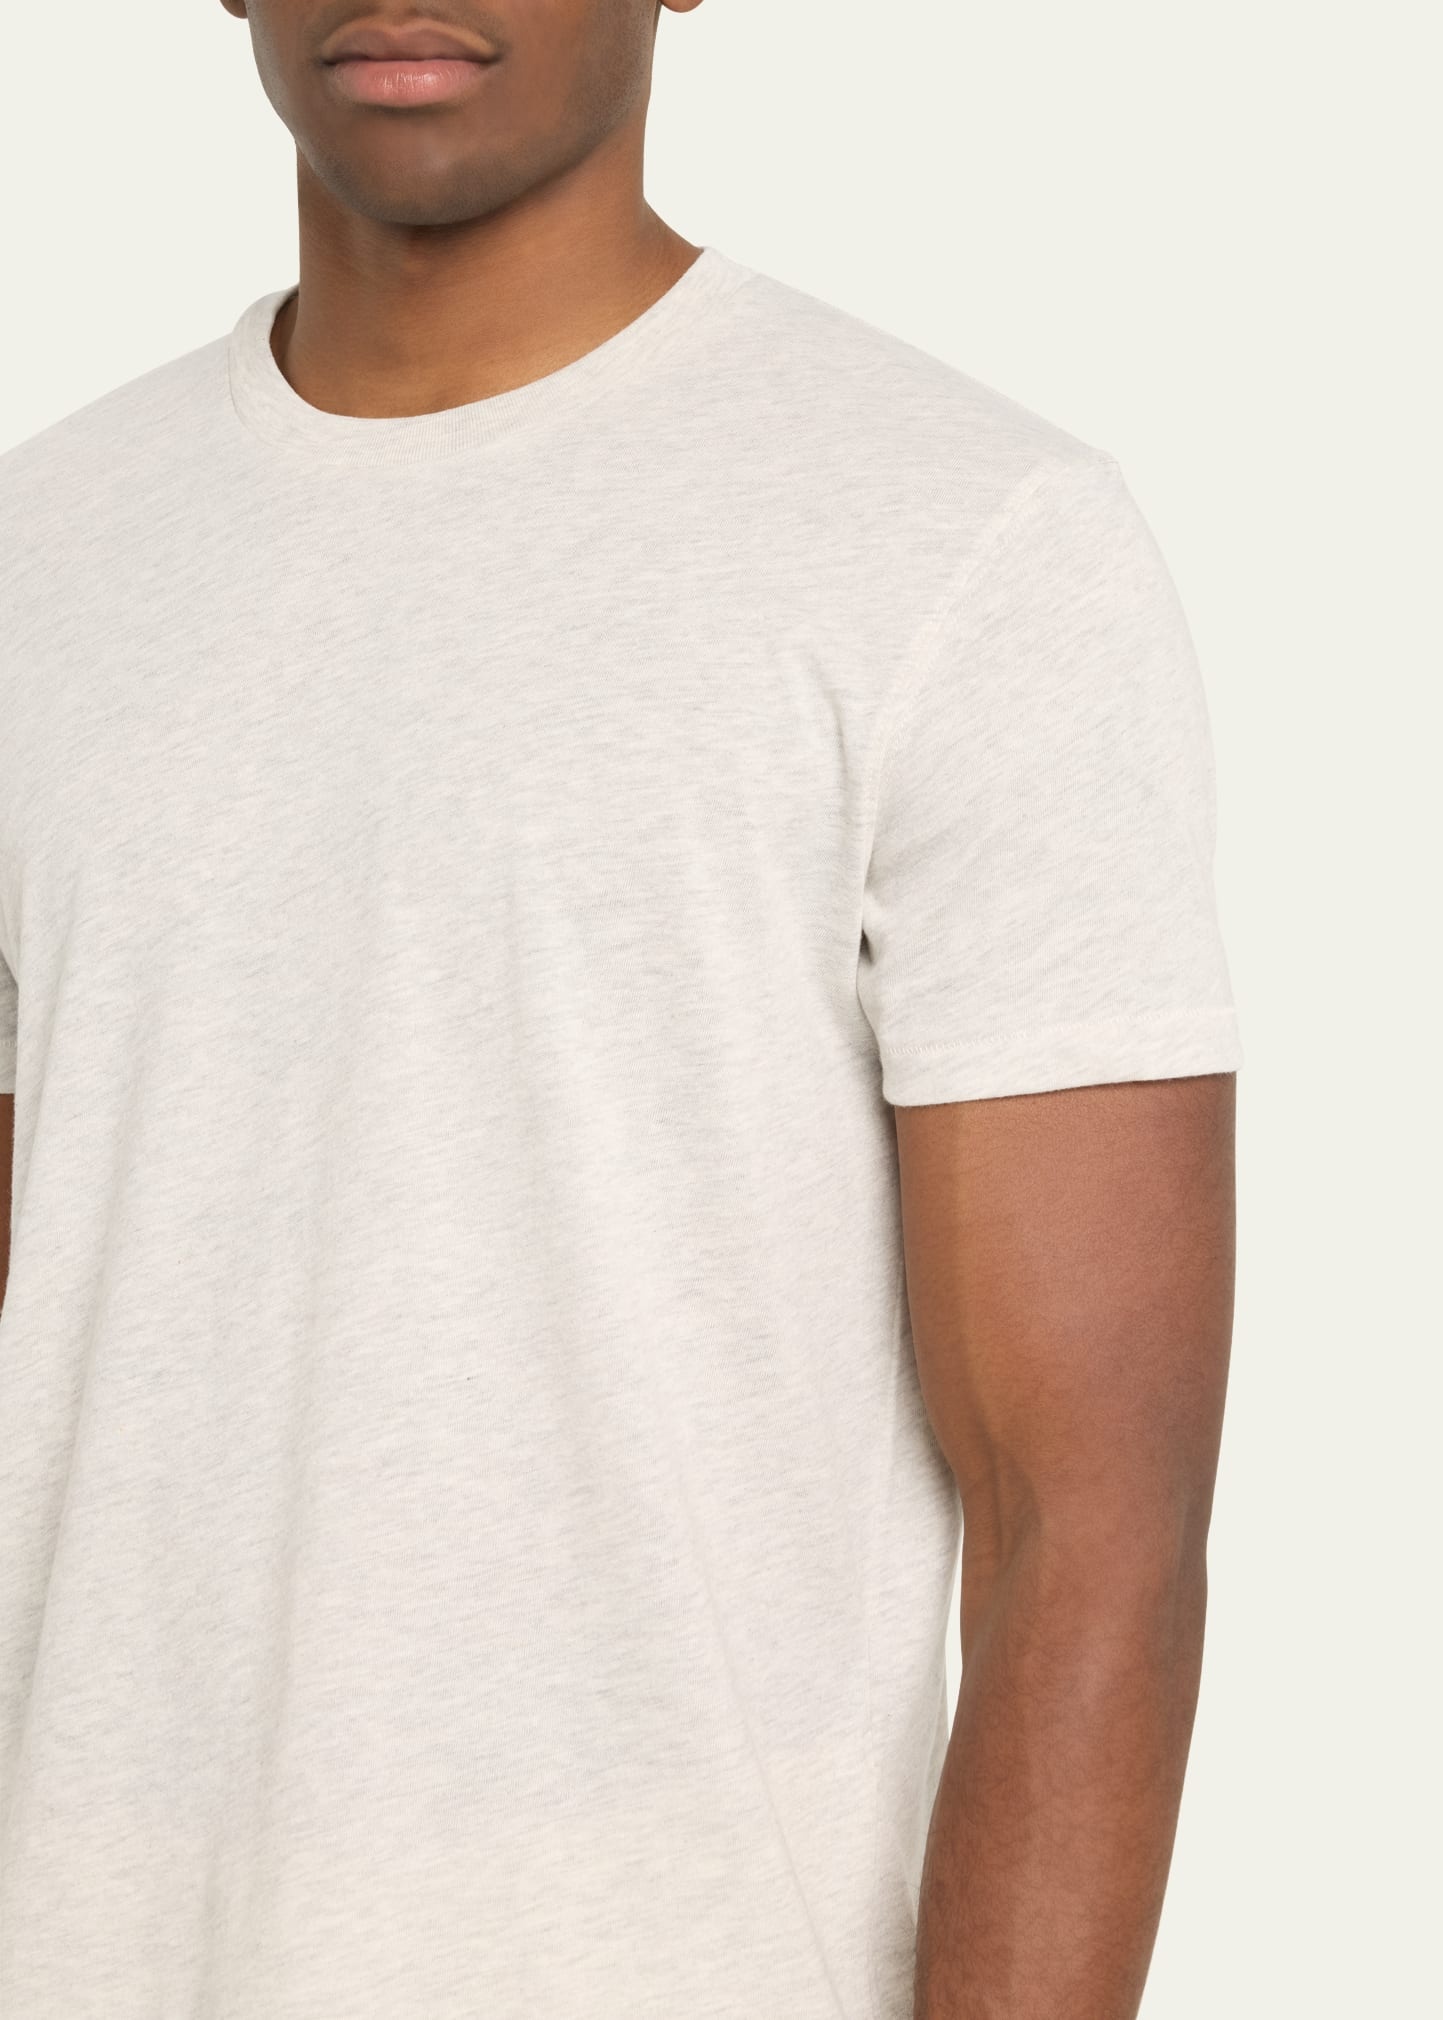 Men's Cotton Crewneck T-Shirt - 5